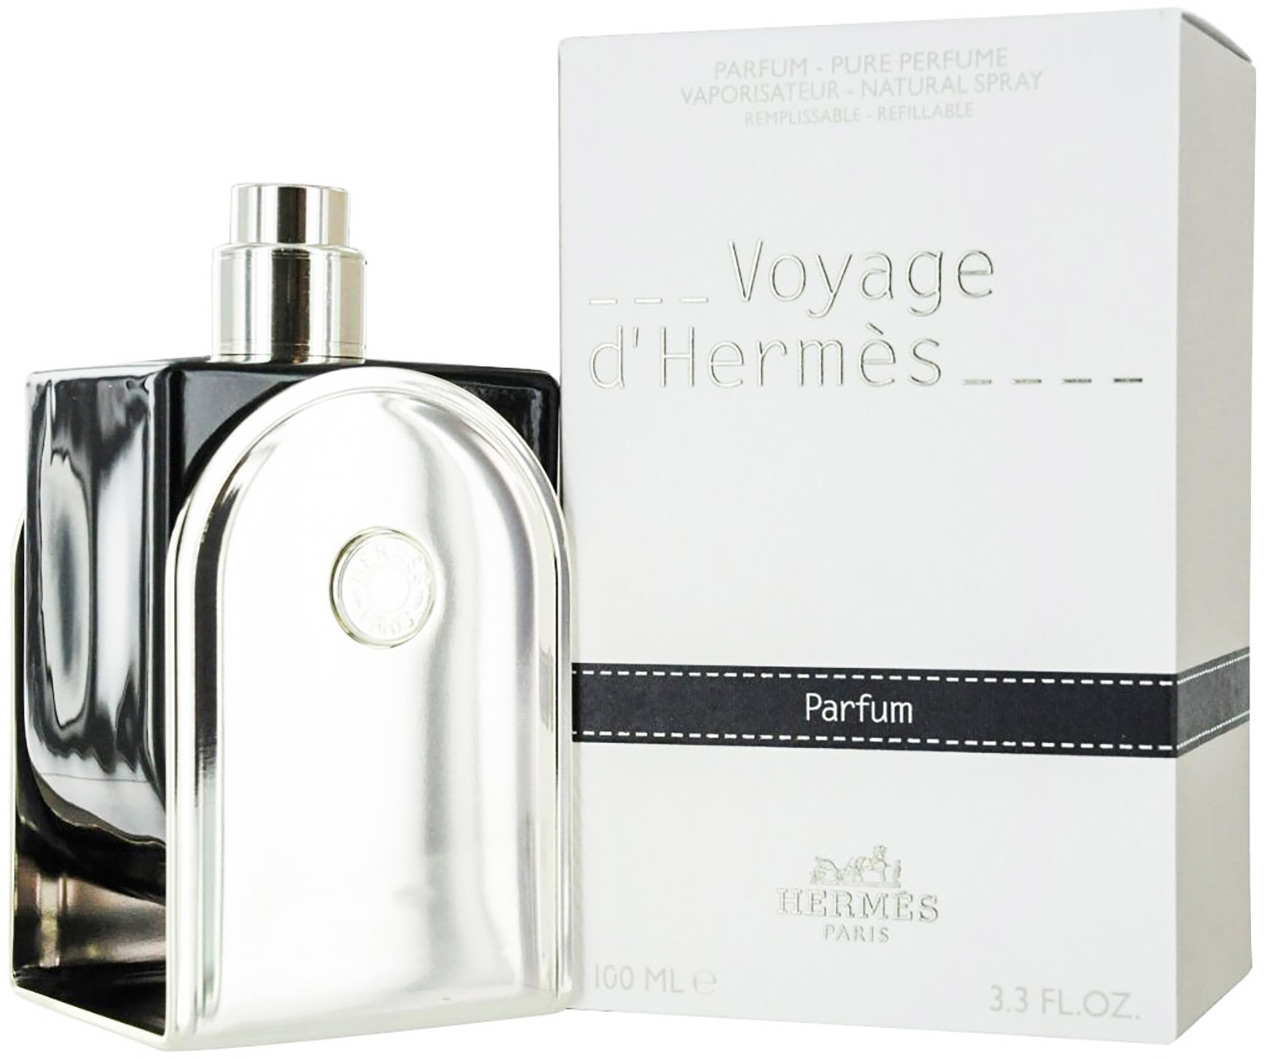 voyage d'hermes parfum 35 ml